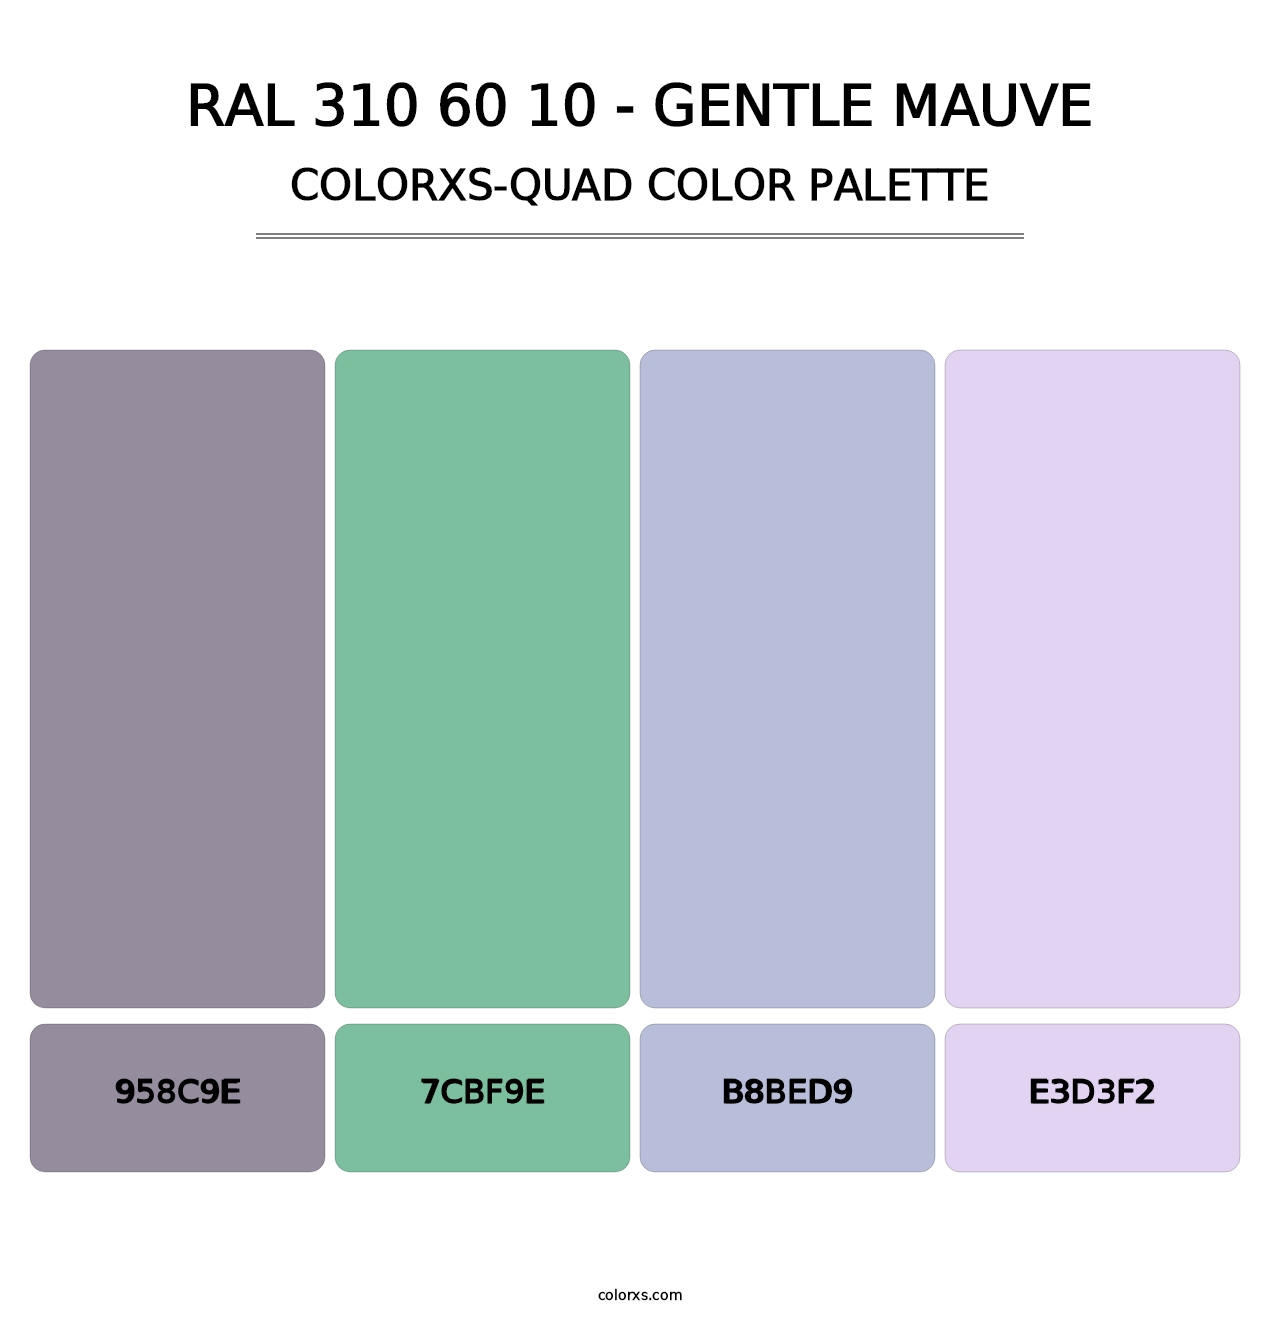 RAL 310 60 10 - Gentle Mauve - Colorxs Quad Palette